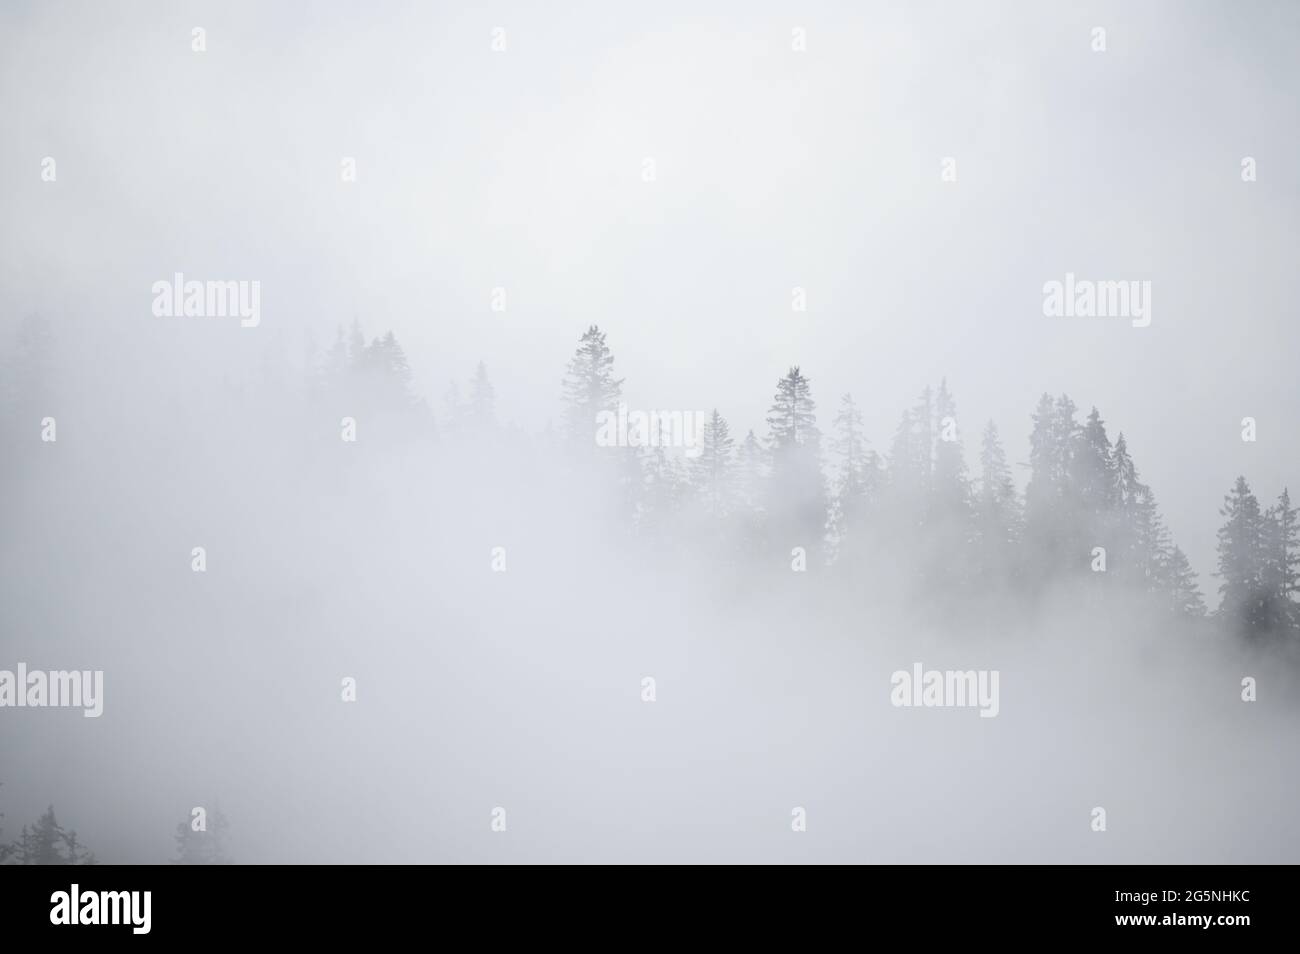 Mistische Landschaft in einem Alpenwald in den berner alpen Stockfoto